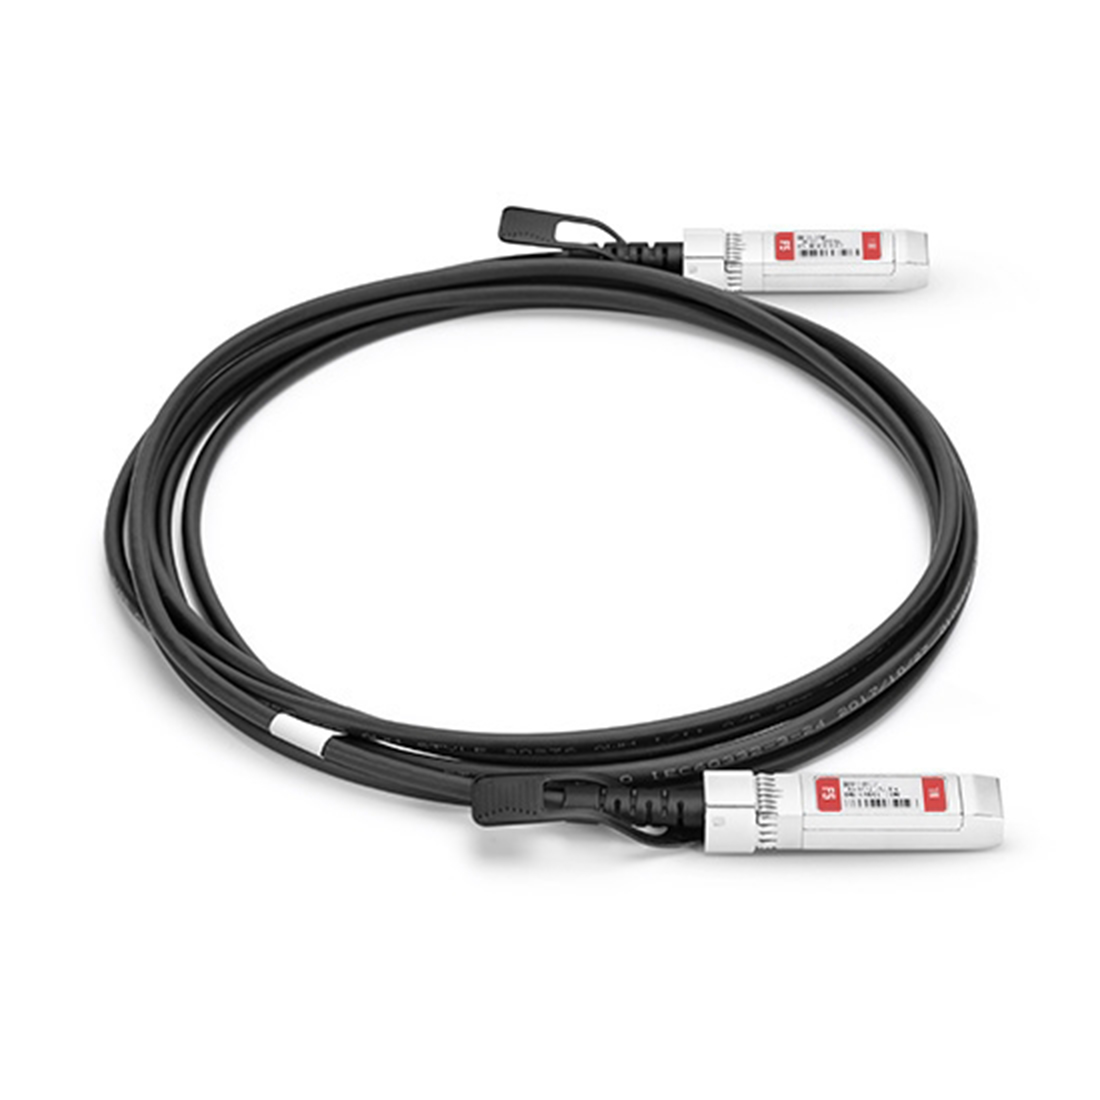 Пассивный кабель FS SFPP-PC01 10G SFP+ 1m